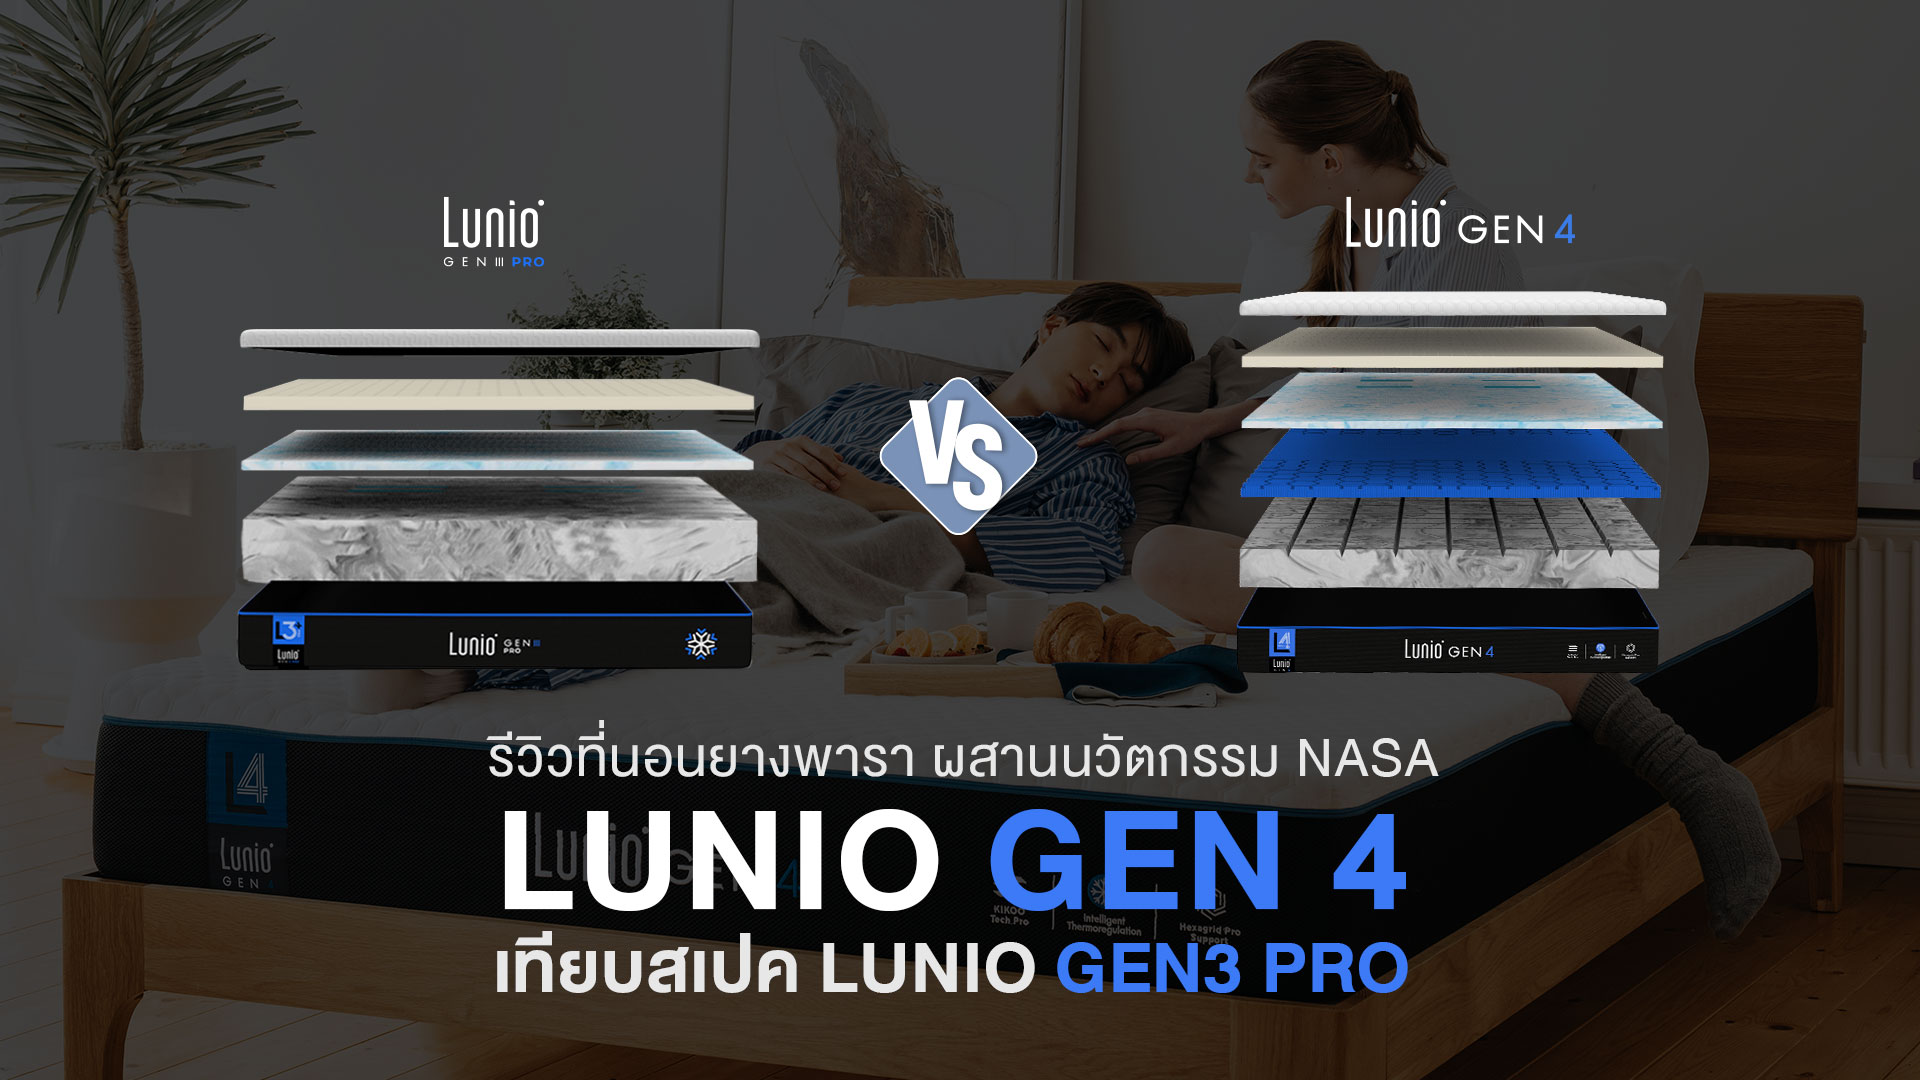 รีวิวที่นอน LUNIO GEN4 ที่นอนยางพาราผสานนวัตกรรม NASA เทียบสเปค Lunio Gen3 ต่างกันอย่างไร ซื้อดีไหม?